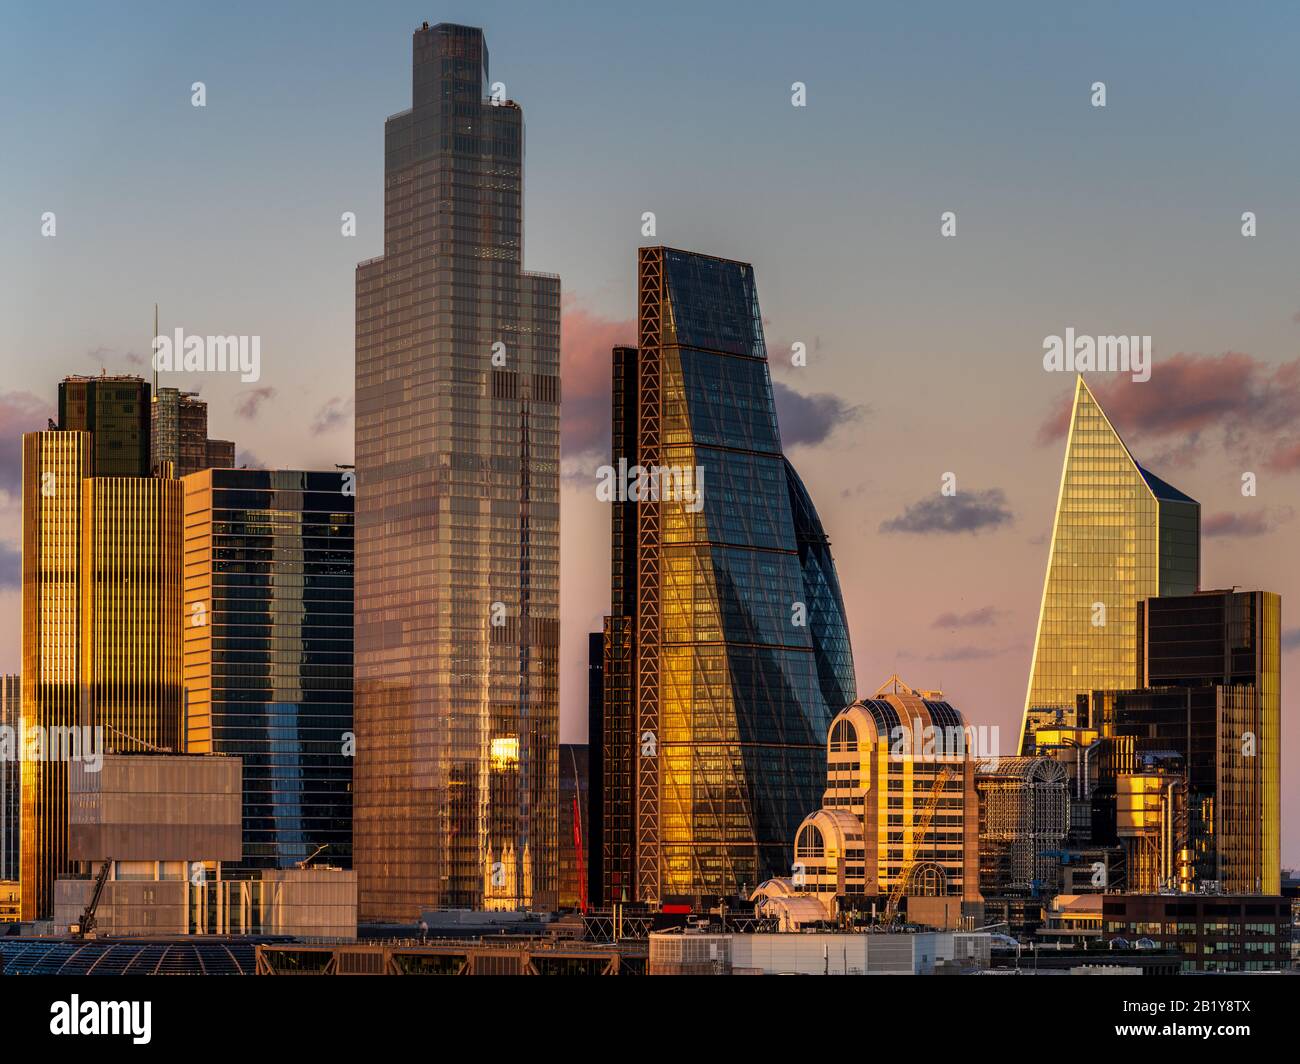 London Financial District - City of London Financial District Skyline au coucher du soleil Banque D'Images